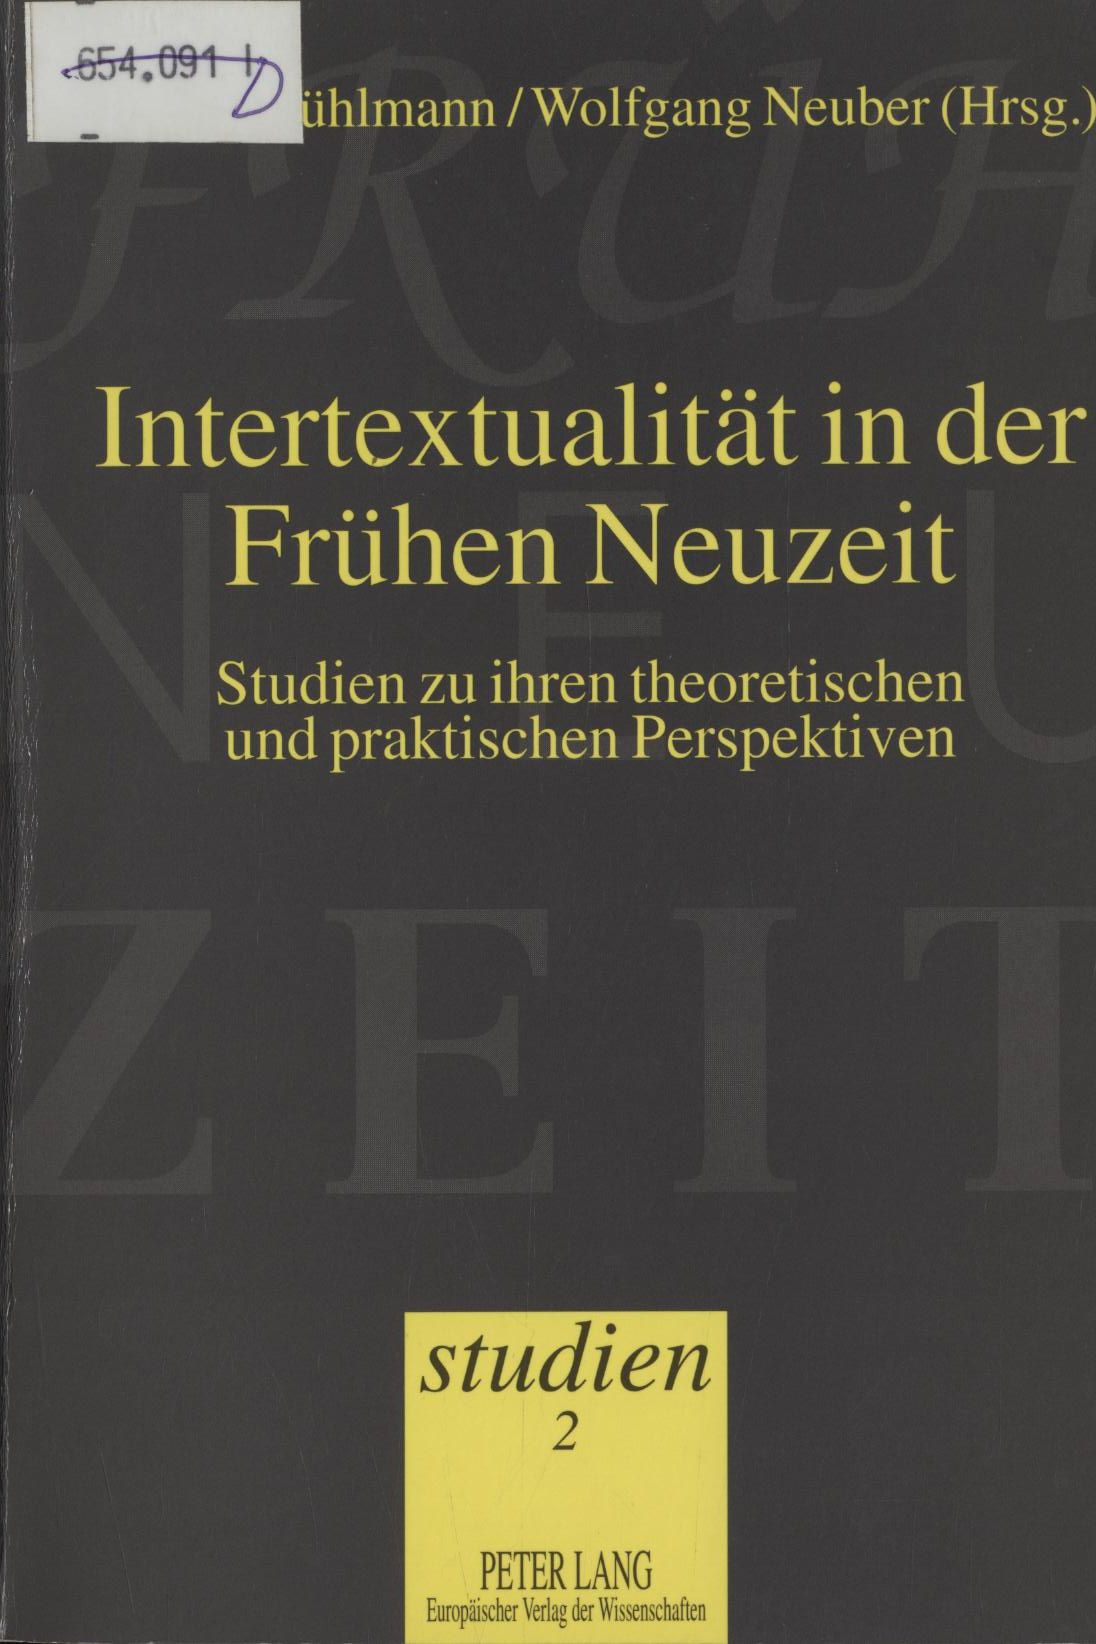 Intertextualität in der Frühen Neuzeit Studien zu ihren theoretischen und praktischen Perspektiven - Kühlmann, Wilhelm und Wolfgang Neuber